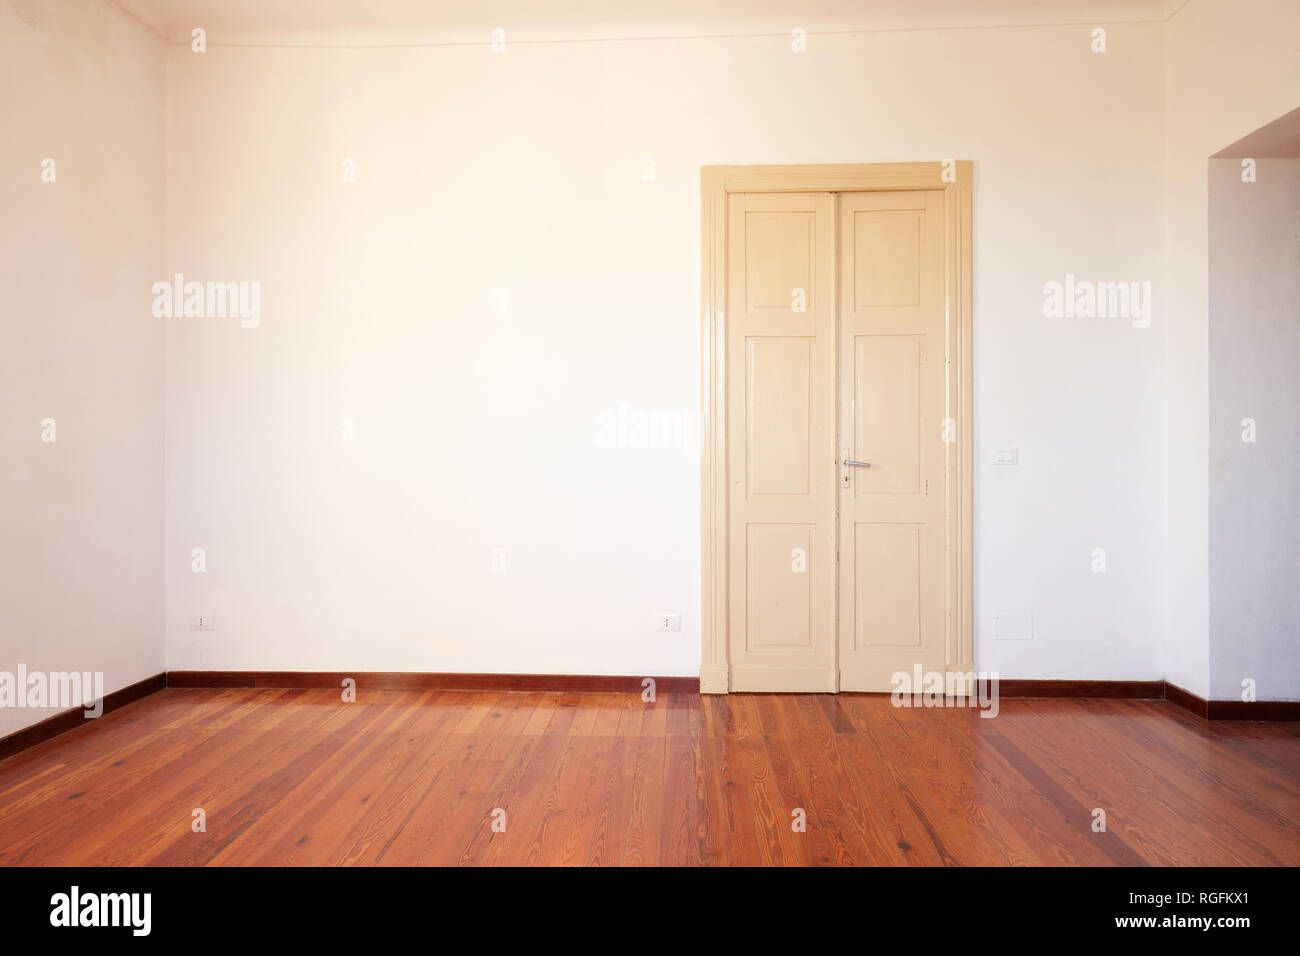 Empty room with wooden floor and door in old house Stock Photo